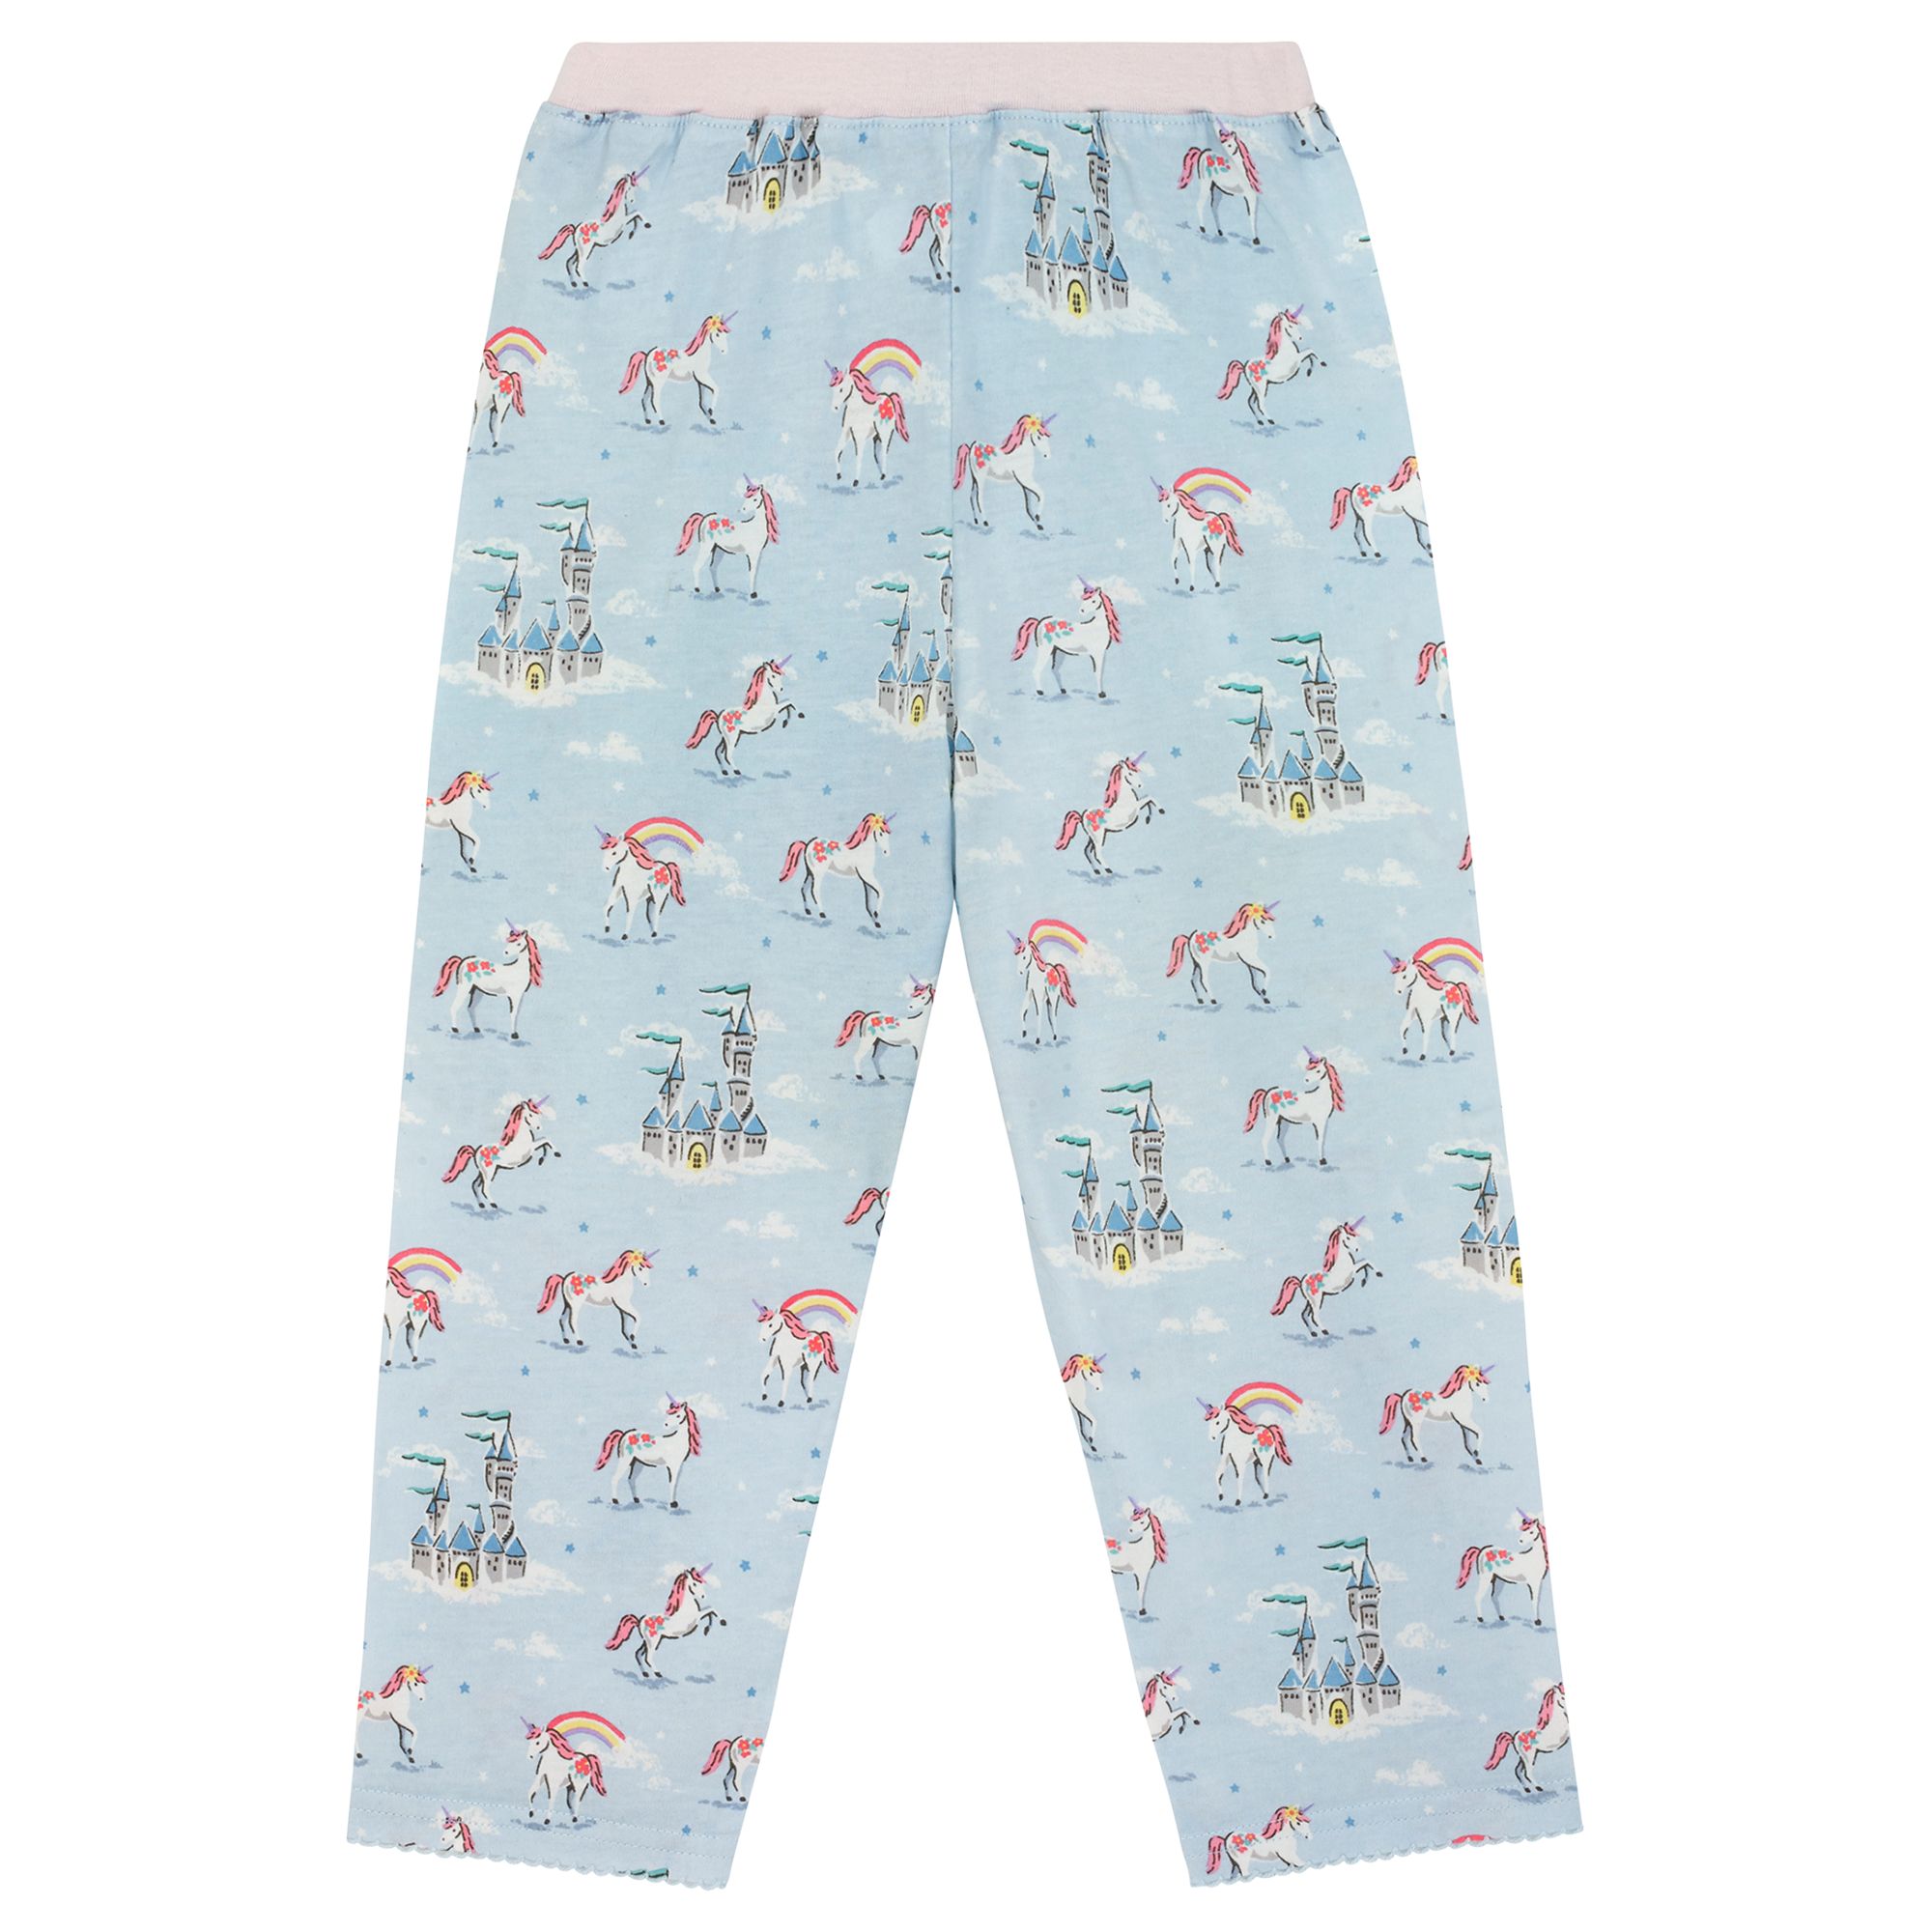 cath kidston girls pyjamas